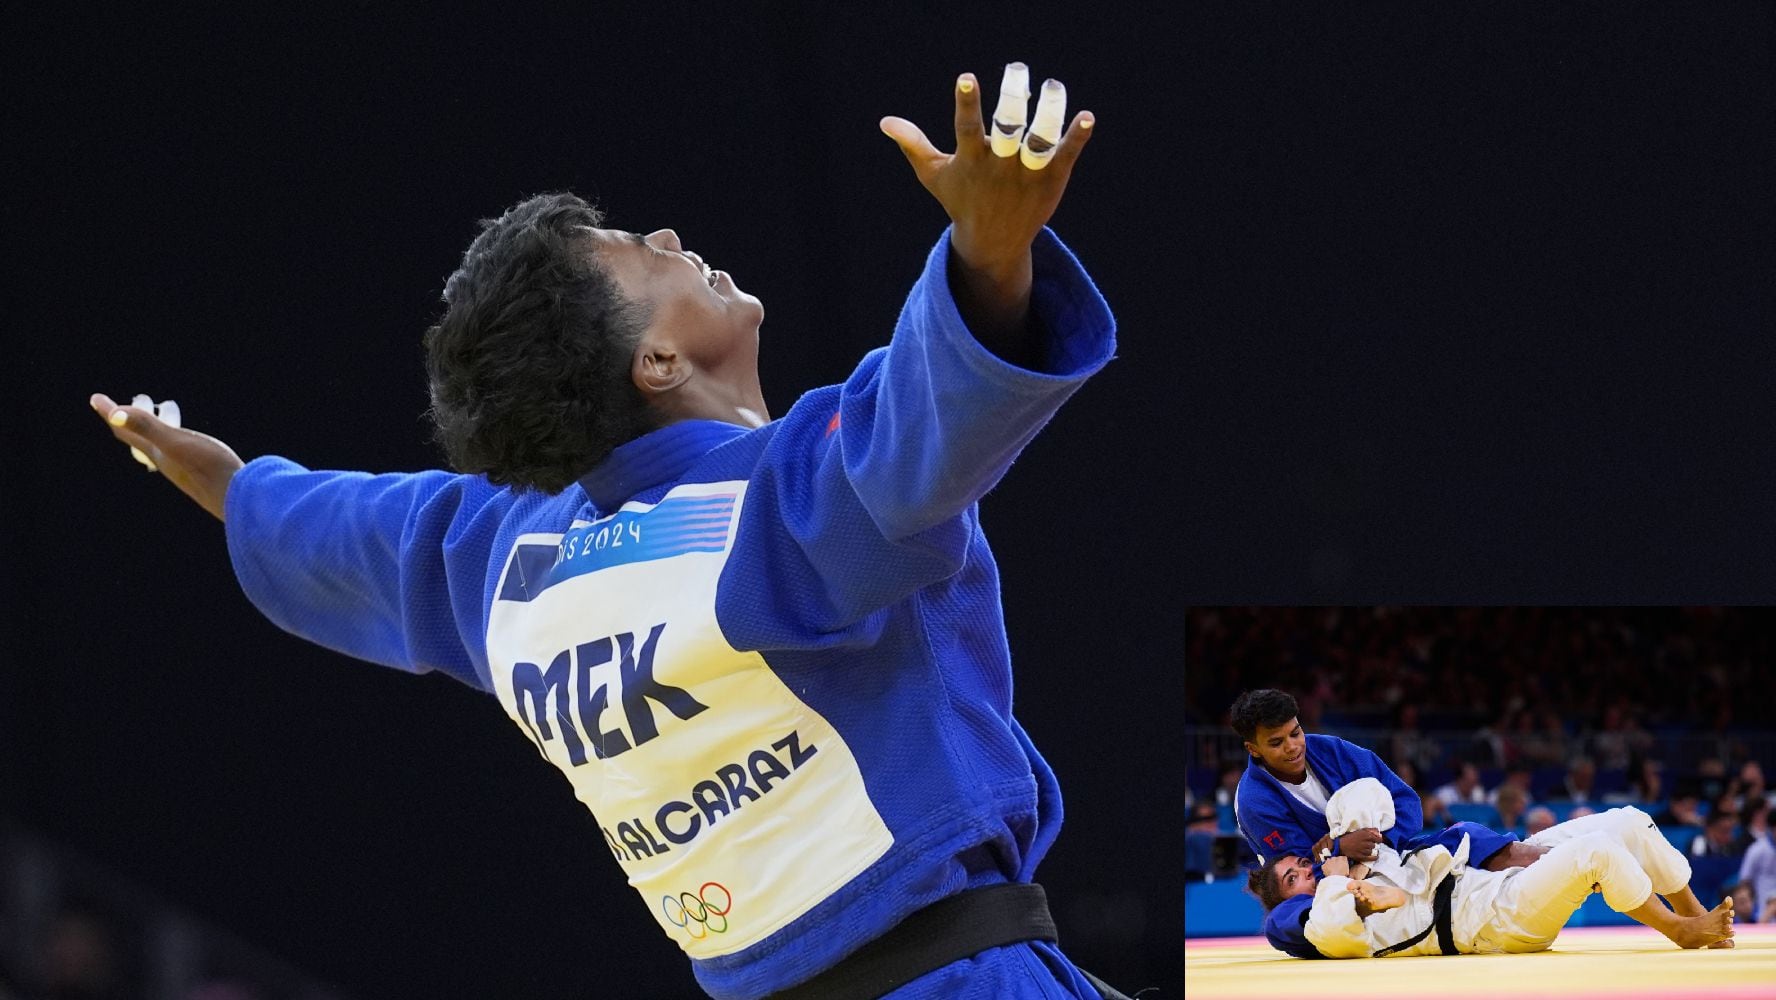 Prisca Awiti compitió en la final de judo, categoría -63kg, por la primera medalla de oro en la historia de México sobre este deporte.